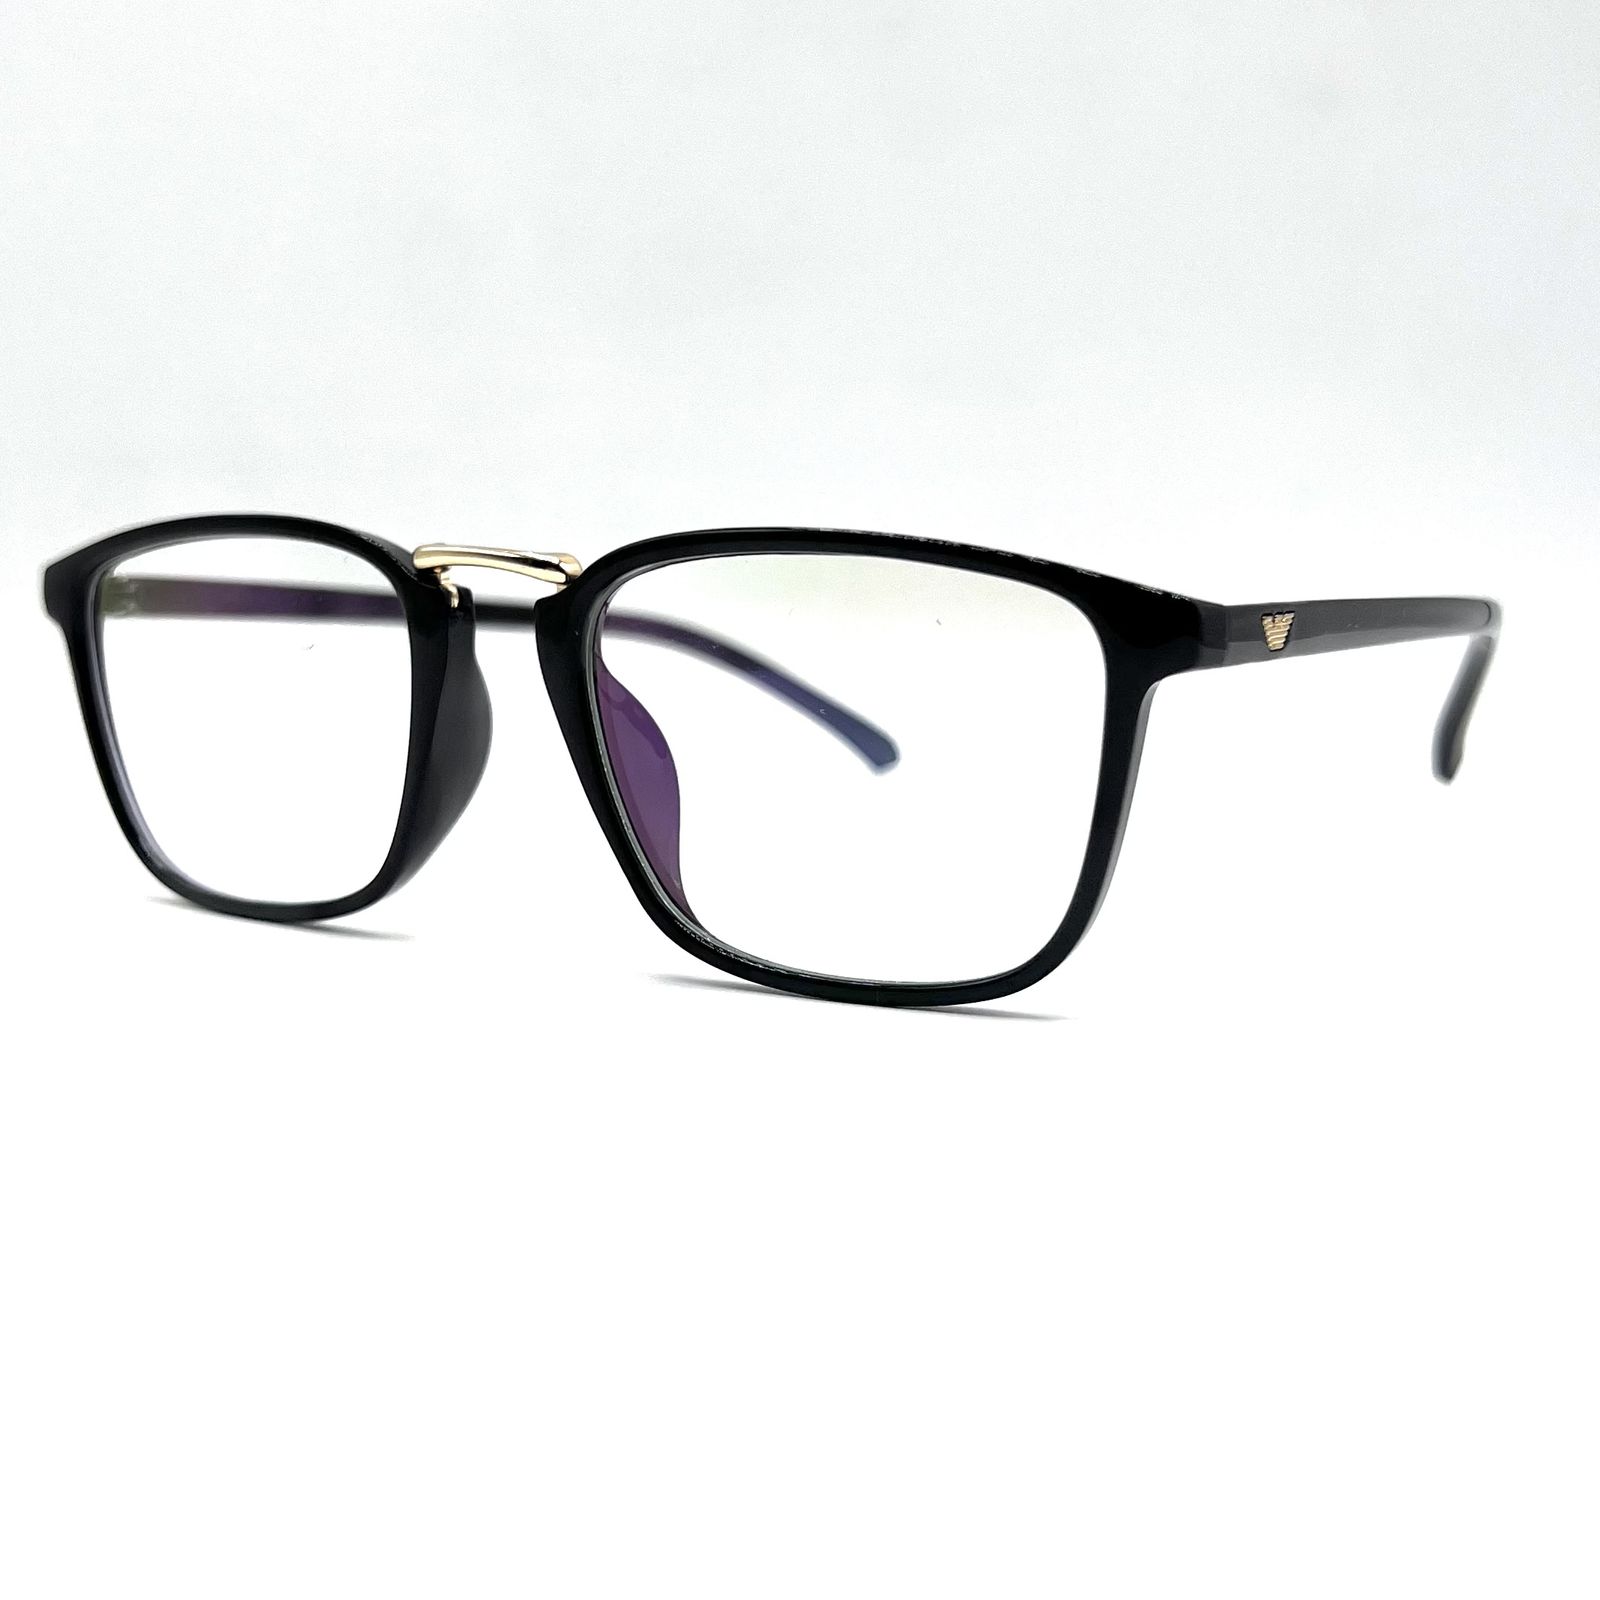 فریم عینک طبی مدل G 7007 -  - 2